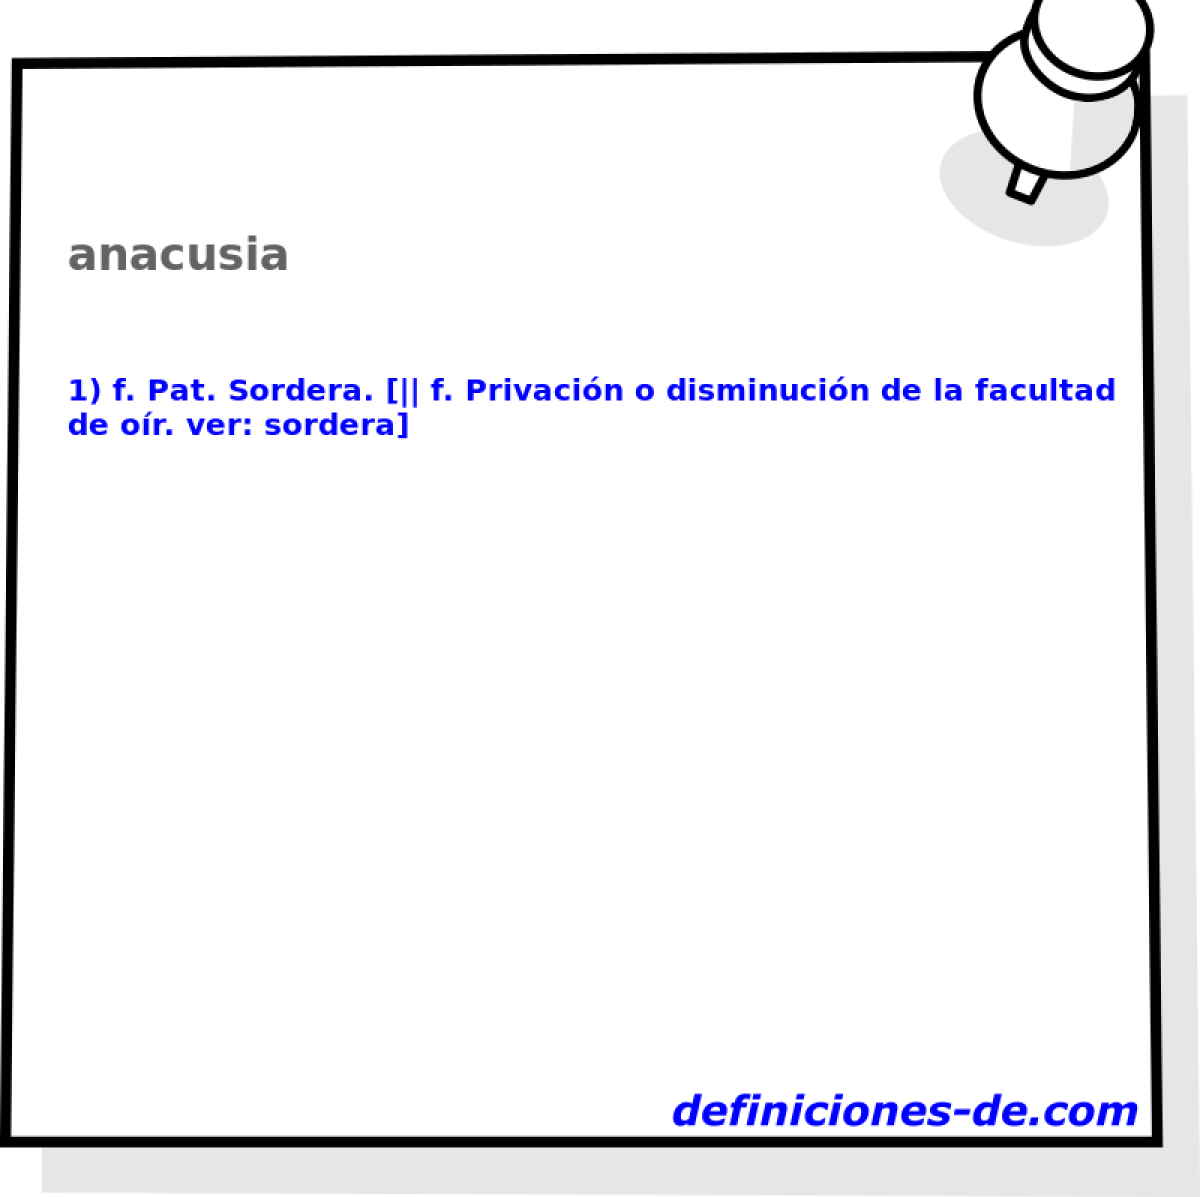 anacusia 